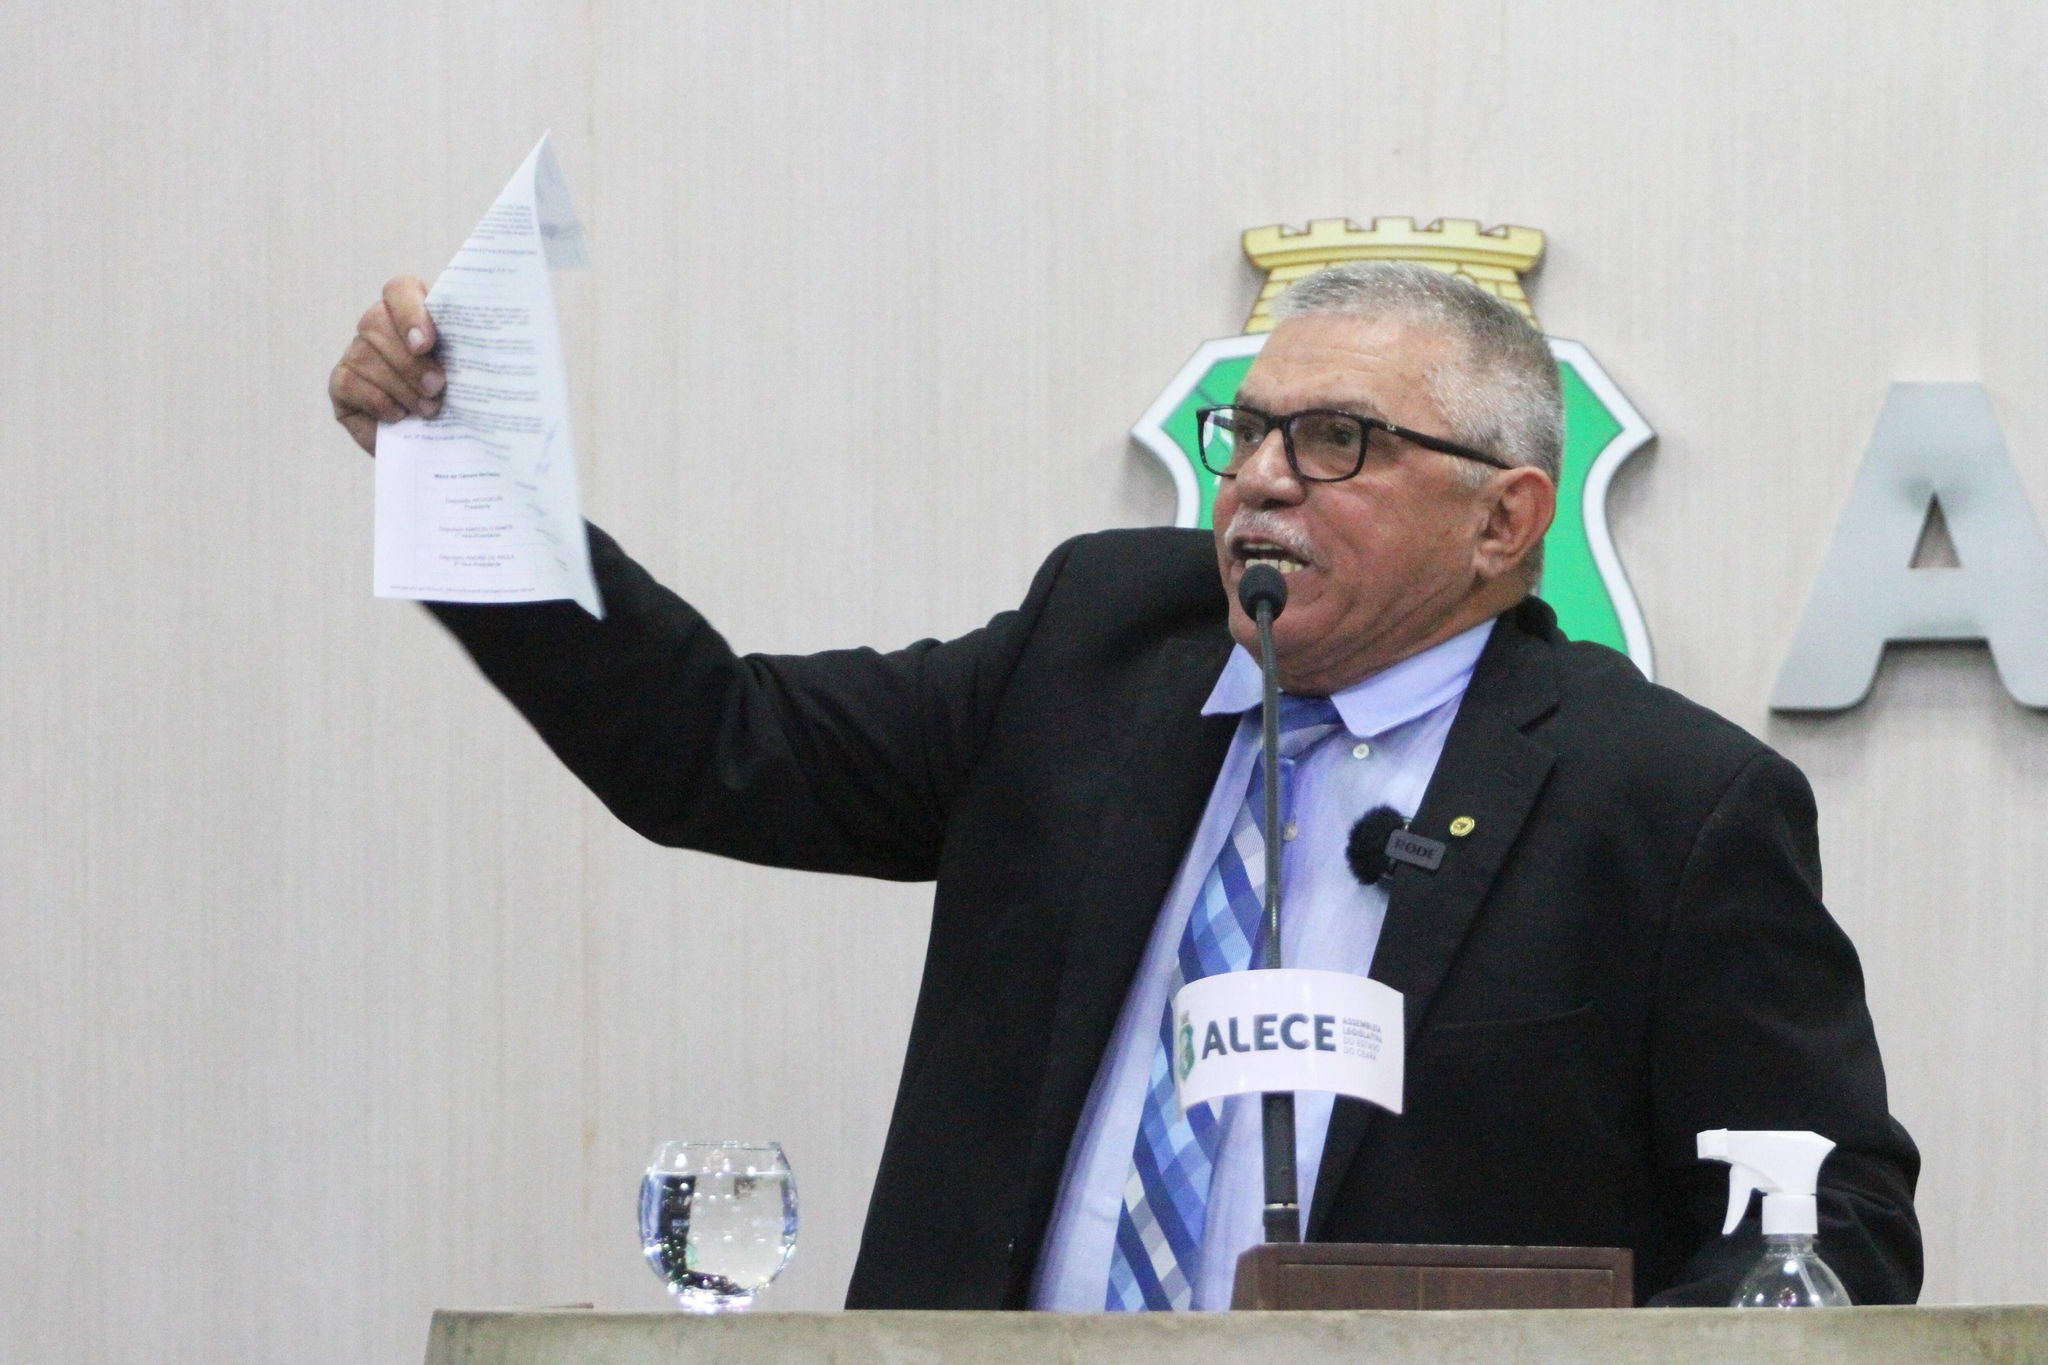 Delegado Cavalcante (PL) era deputado estadual no Ceará e tentava uma vaga na Câmara dos Deputados quando fez o discurso que levou à condenação